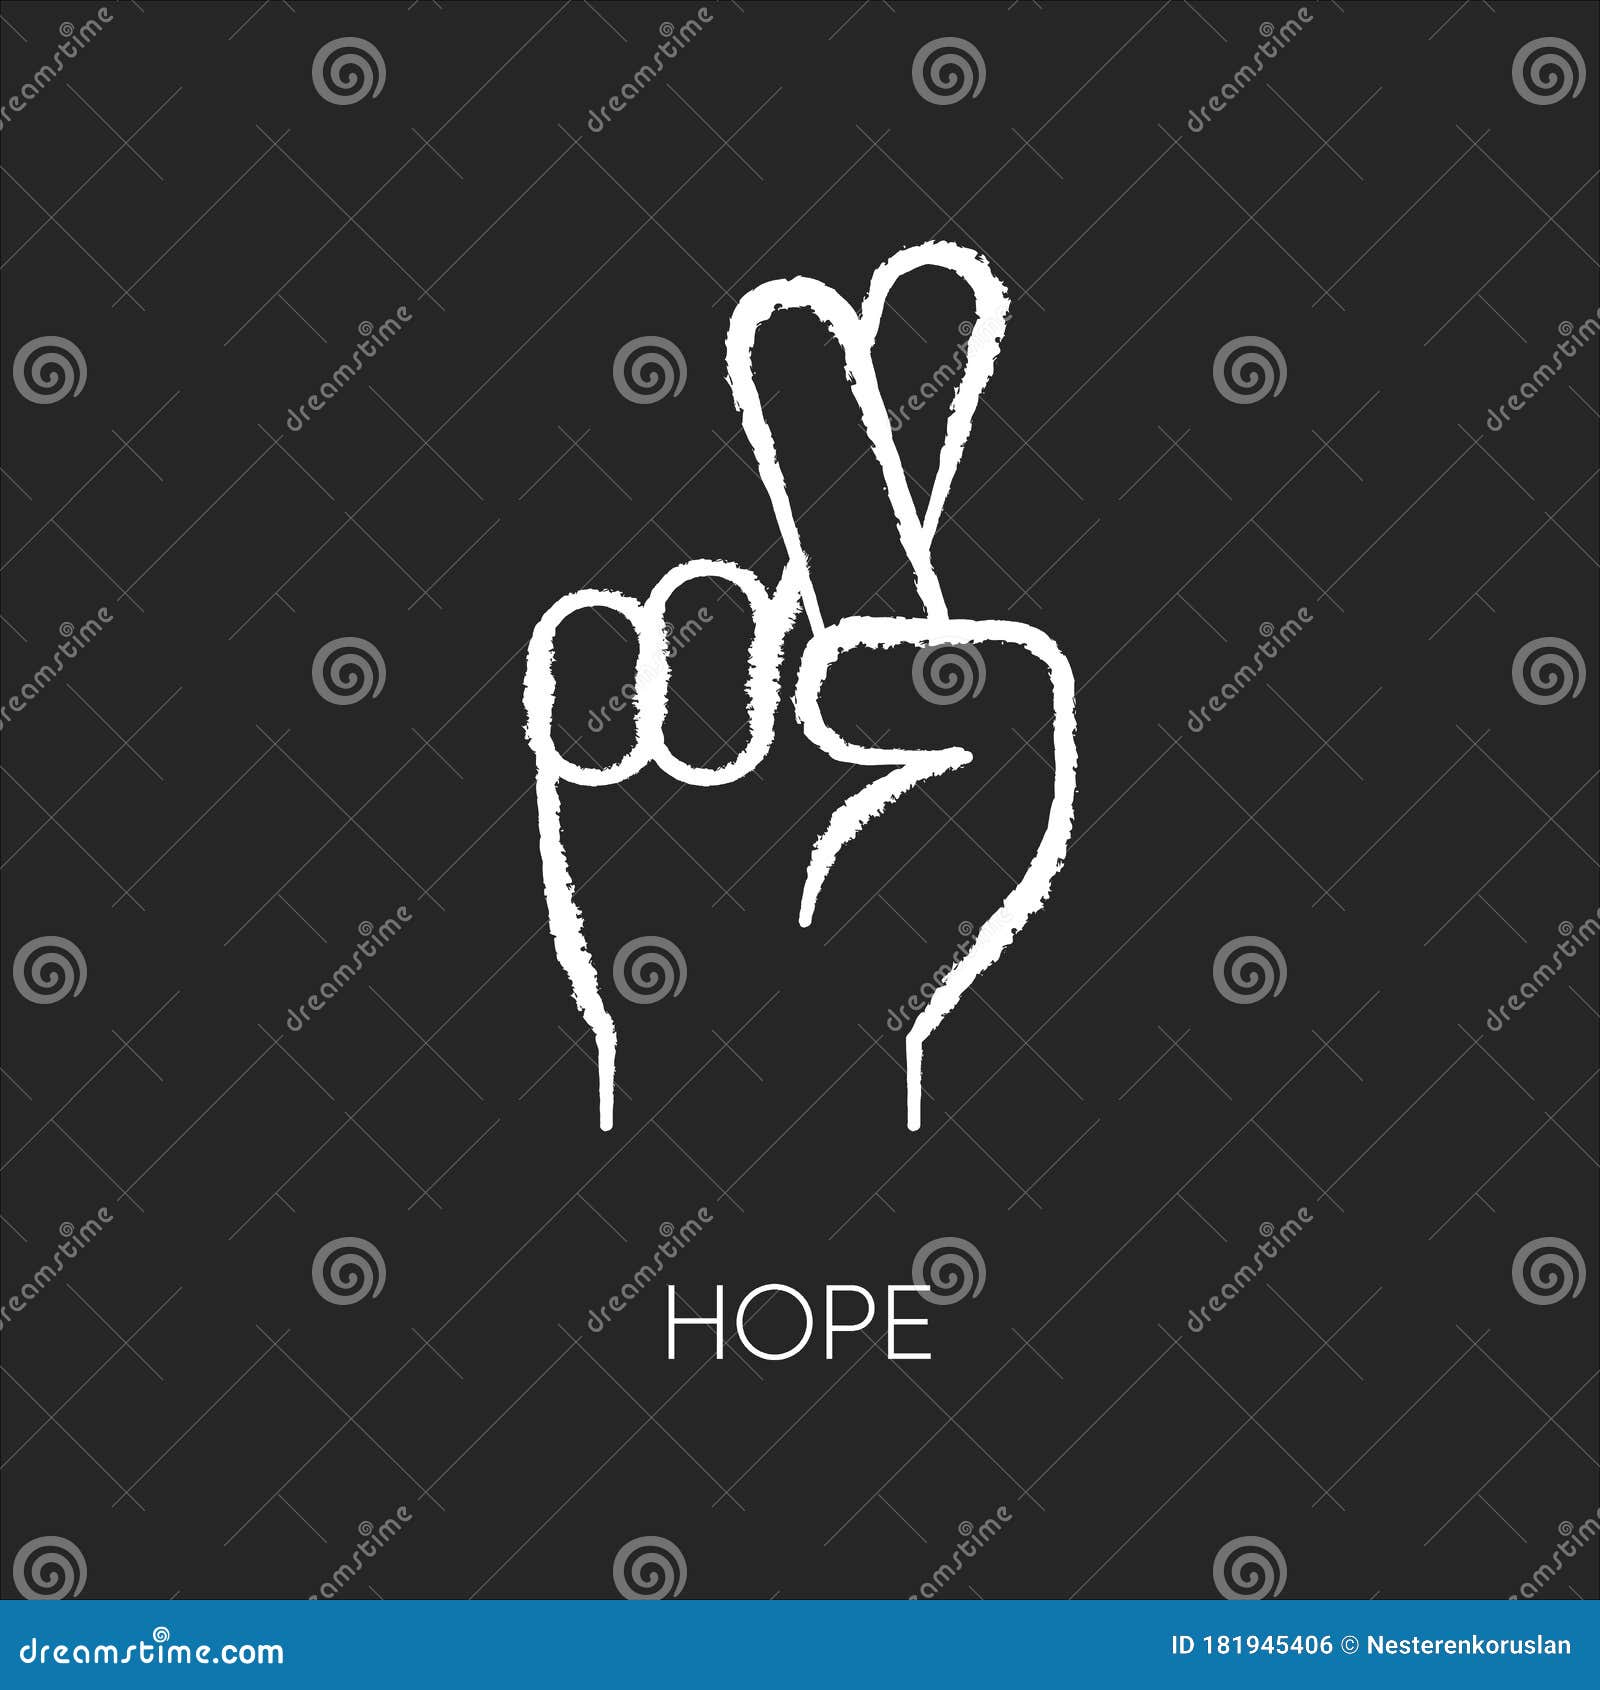 Hope: Hi vọng luôn là cảm hứng cho tất cả chúng ta để tiếp tục sống và trưởng thành. Những hình ảnh liên quan đến \